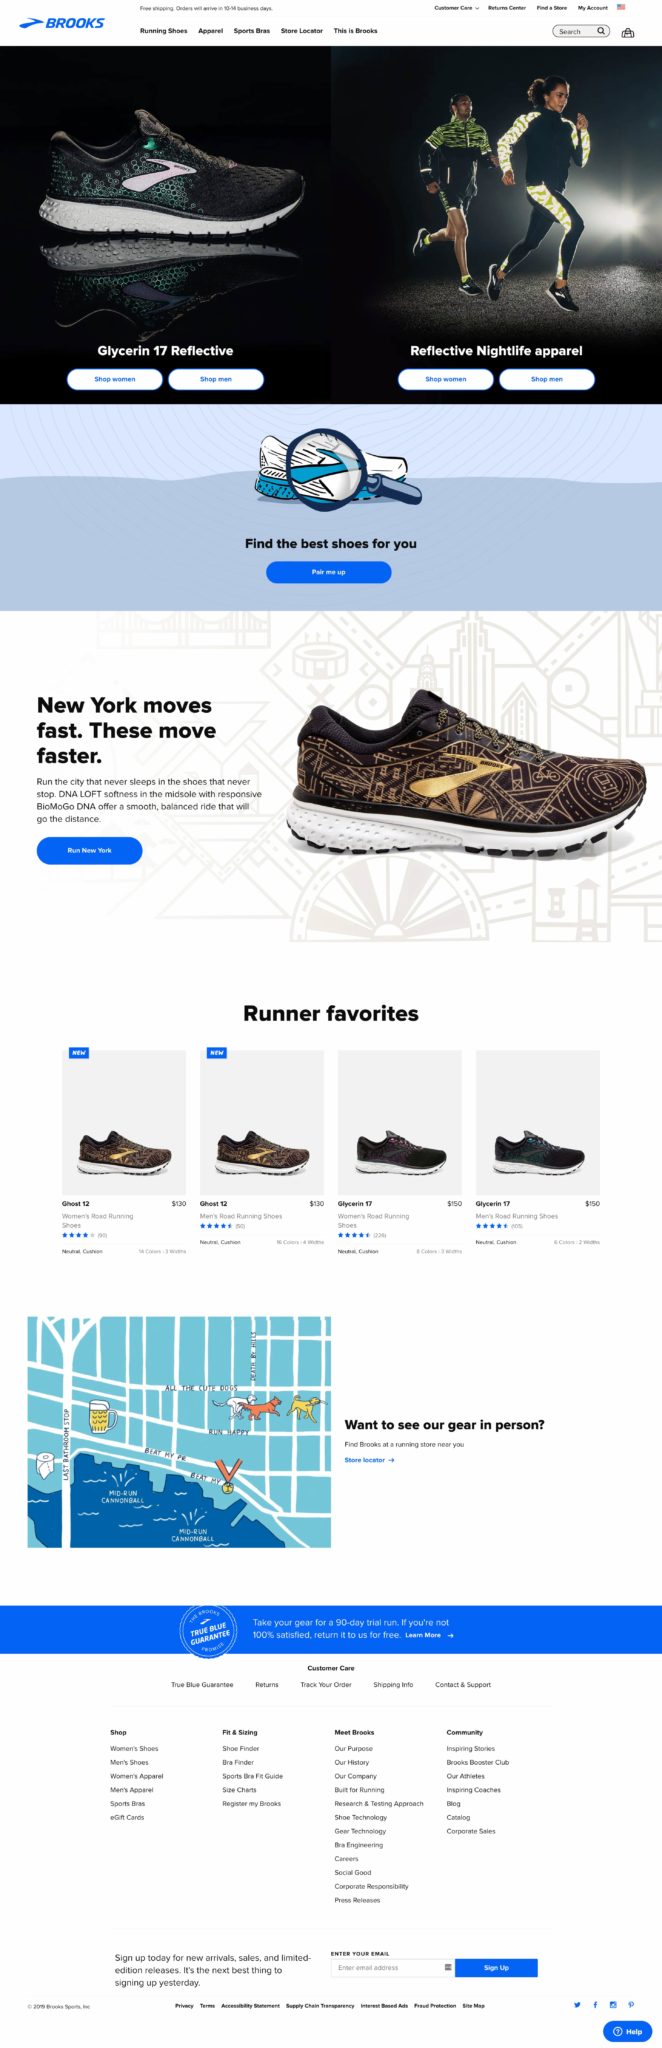 Screenshot of Brooks Running Homepage - October 2019